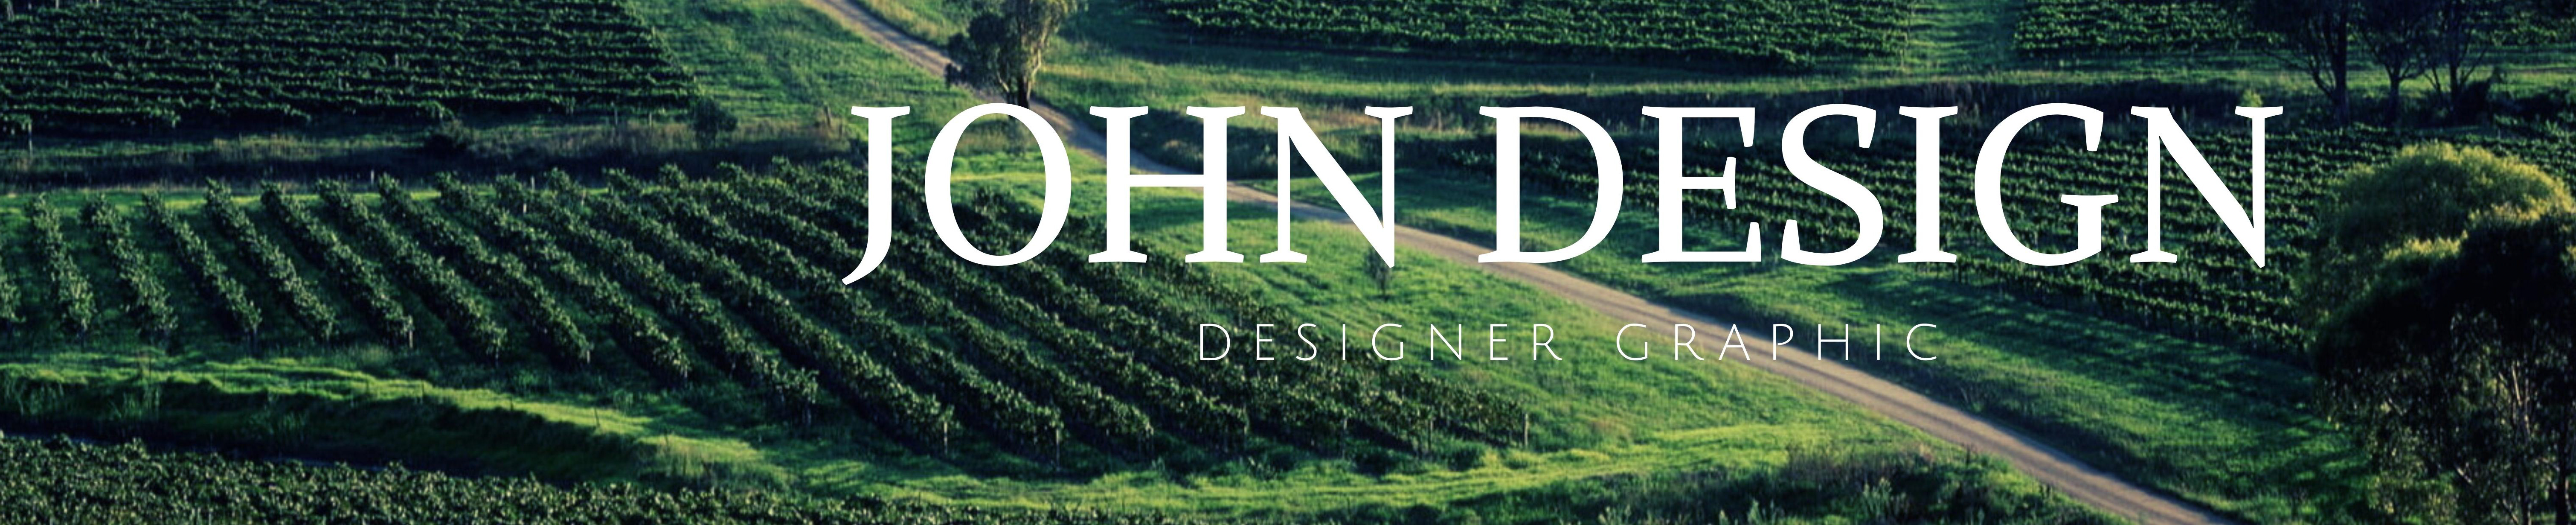 JOHN DESIGN's profile banner